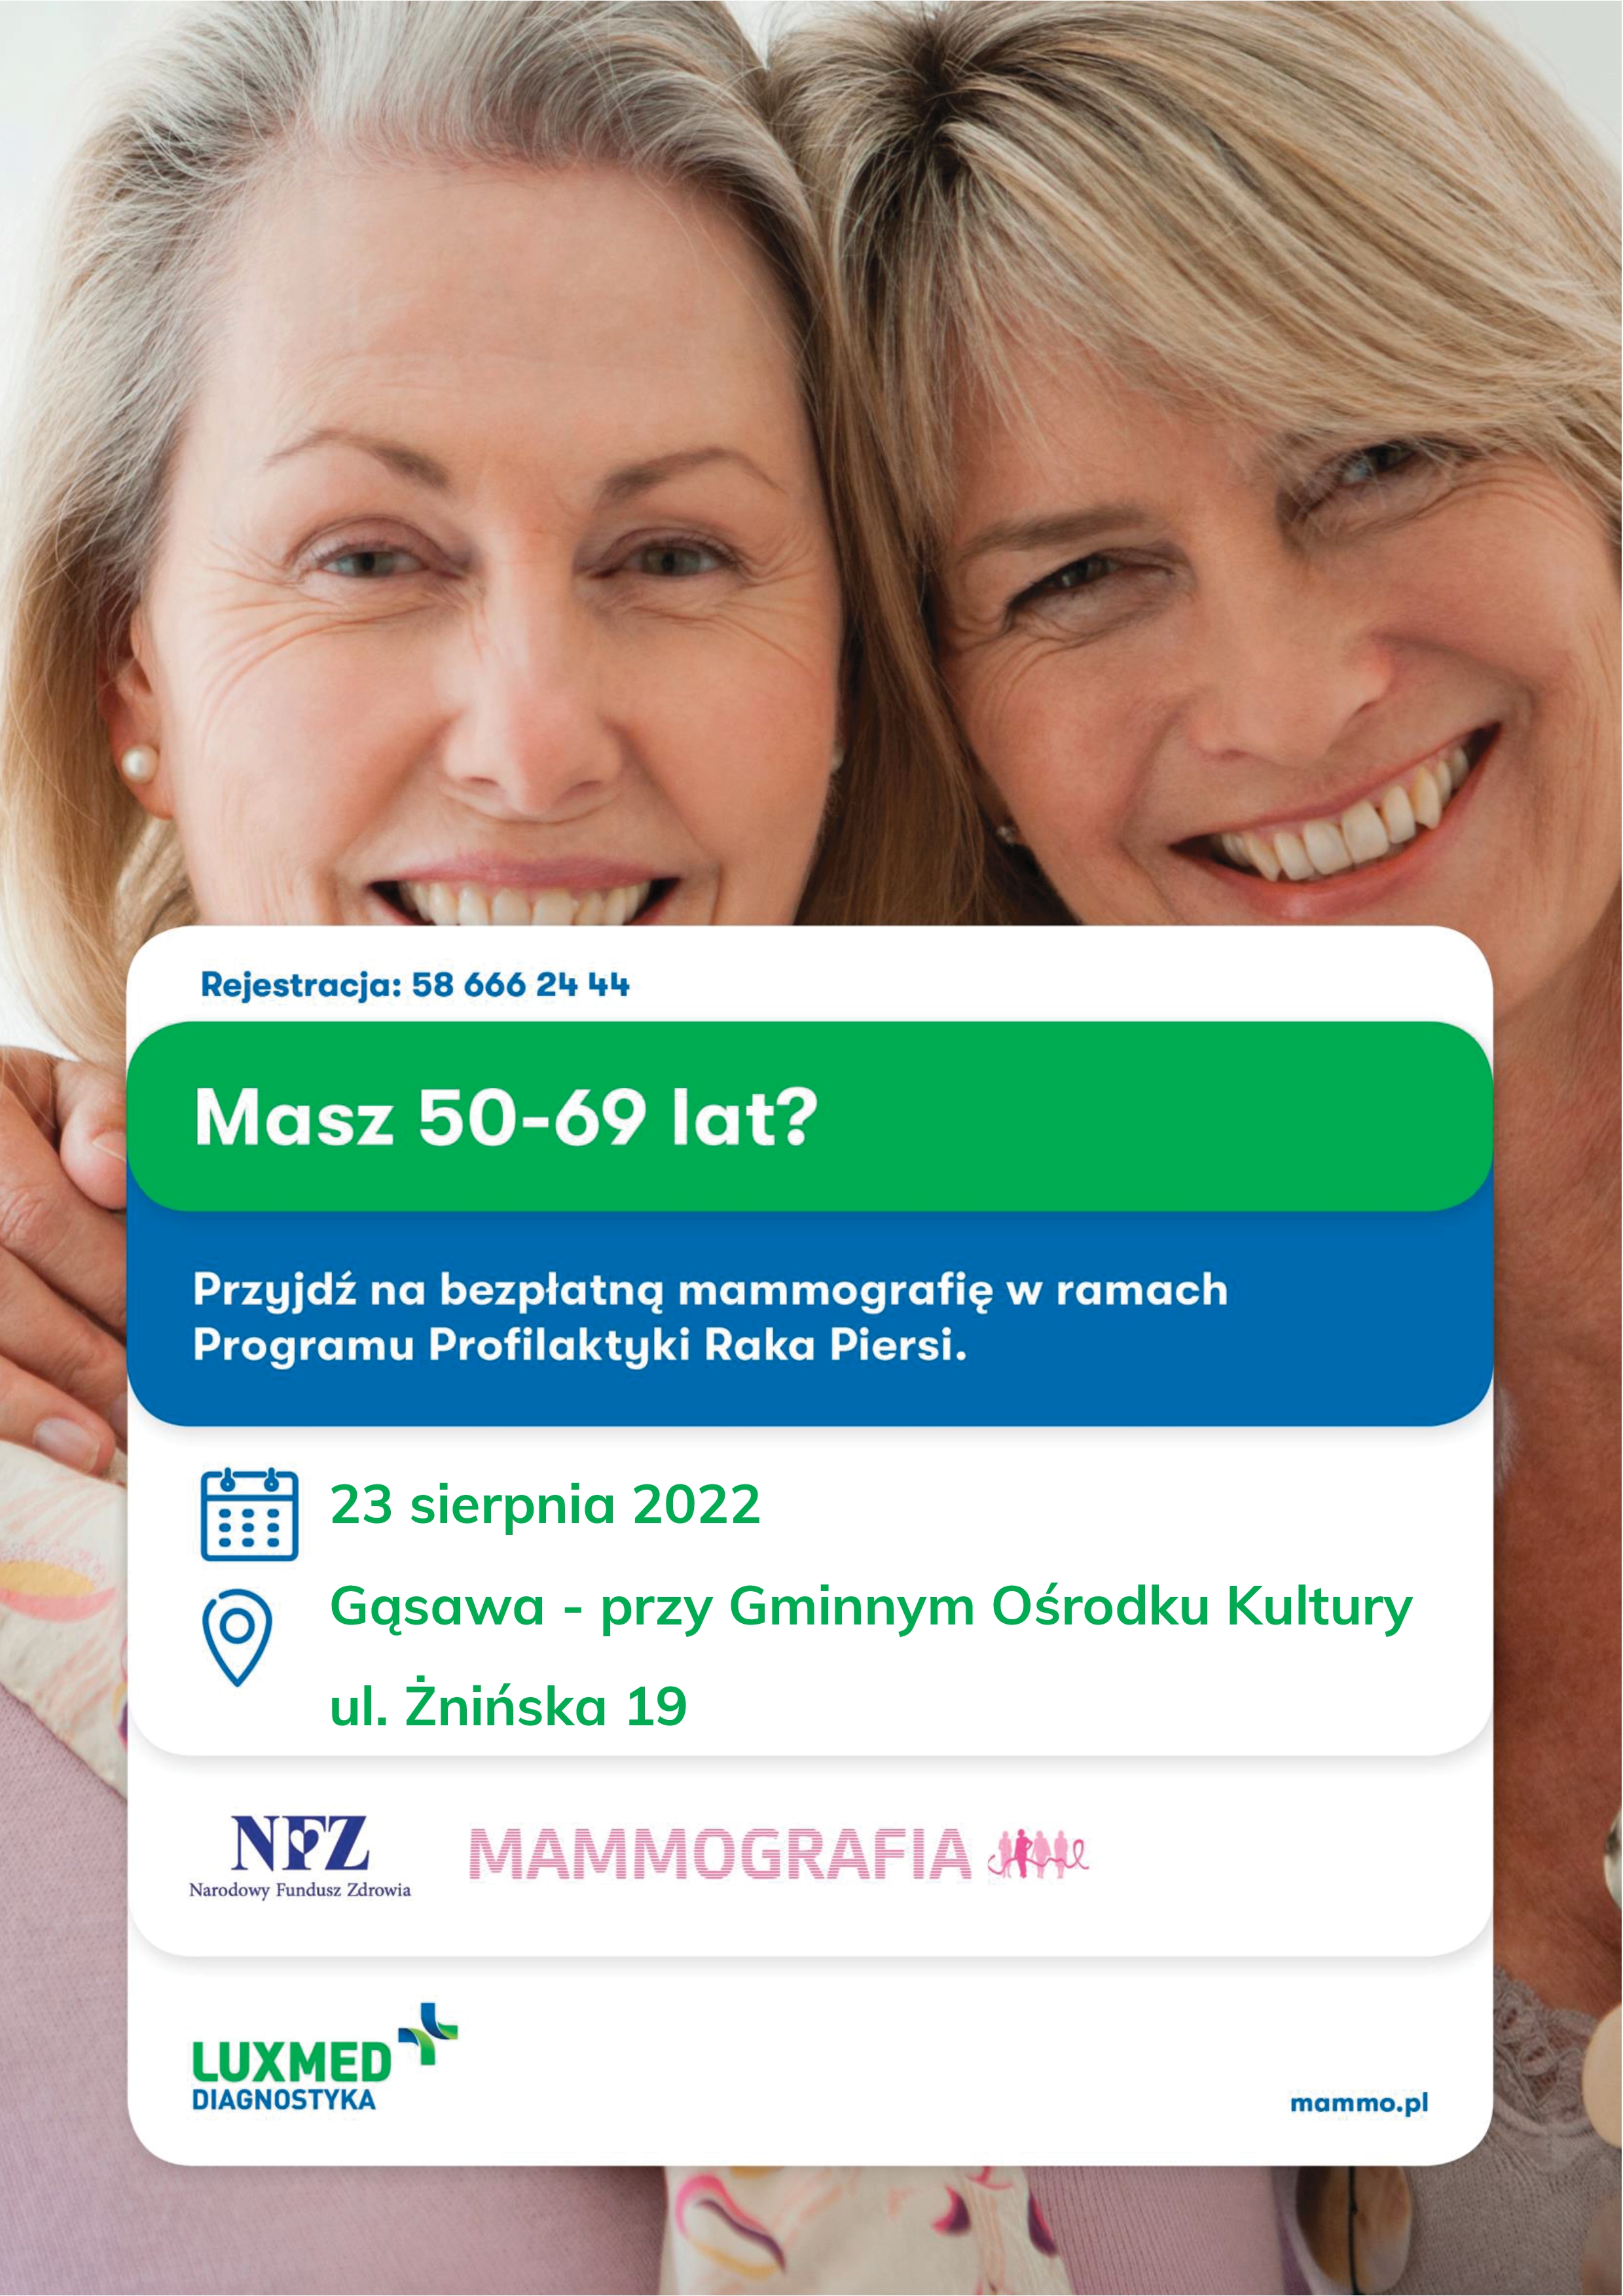 Przyjdź na bezpłatną mammografię w ramach Programu Profilaktyki Raka Piersi - 23 sierpnia 2022 roku - Gminny Ośrodek Kultury w Gąsawie przy ul. Żnińskiej 19 - rejestracja pod numerem 58 666 24 44